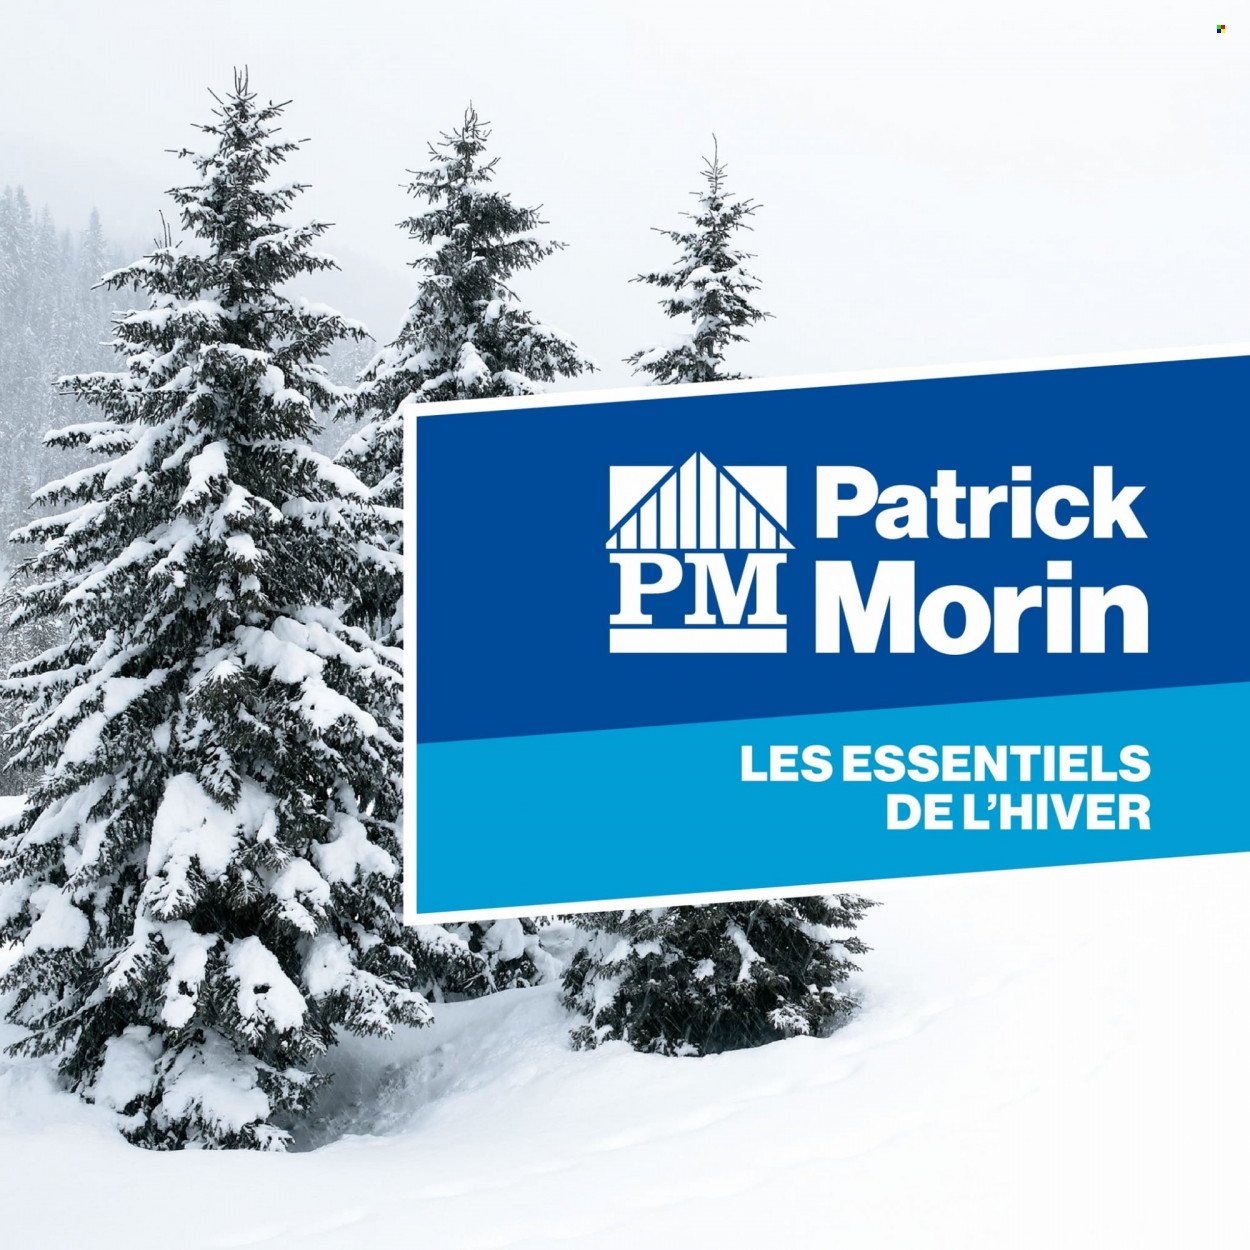 Circulaire Patrick Morin  - 20 Janvier 2022 - 28 Février 2022.